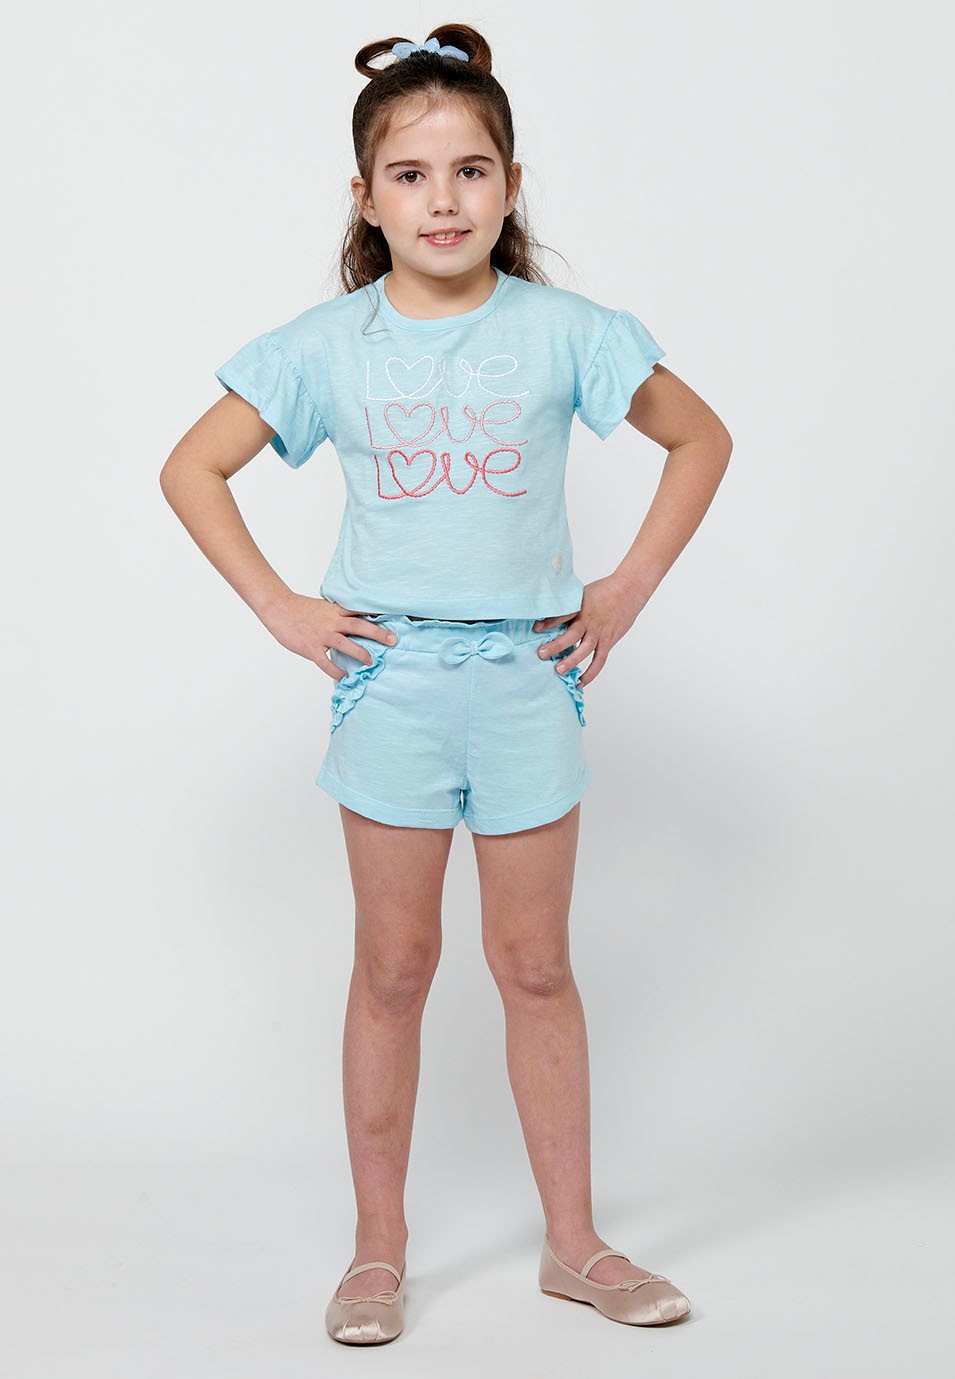 Conjunt de samarreta i pantalons. Samarreta de màniga curta amb estampat davanter i Pantalons curts amb cintura engomada de Color Blau per a Nena